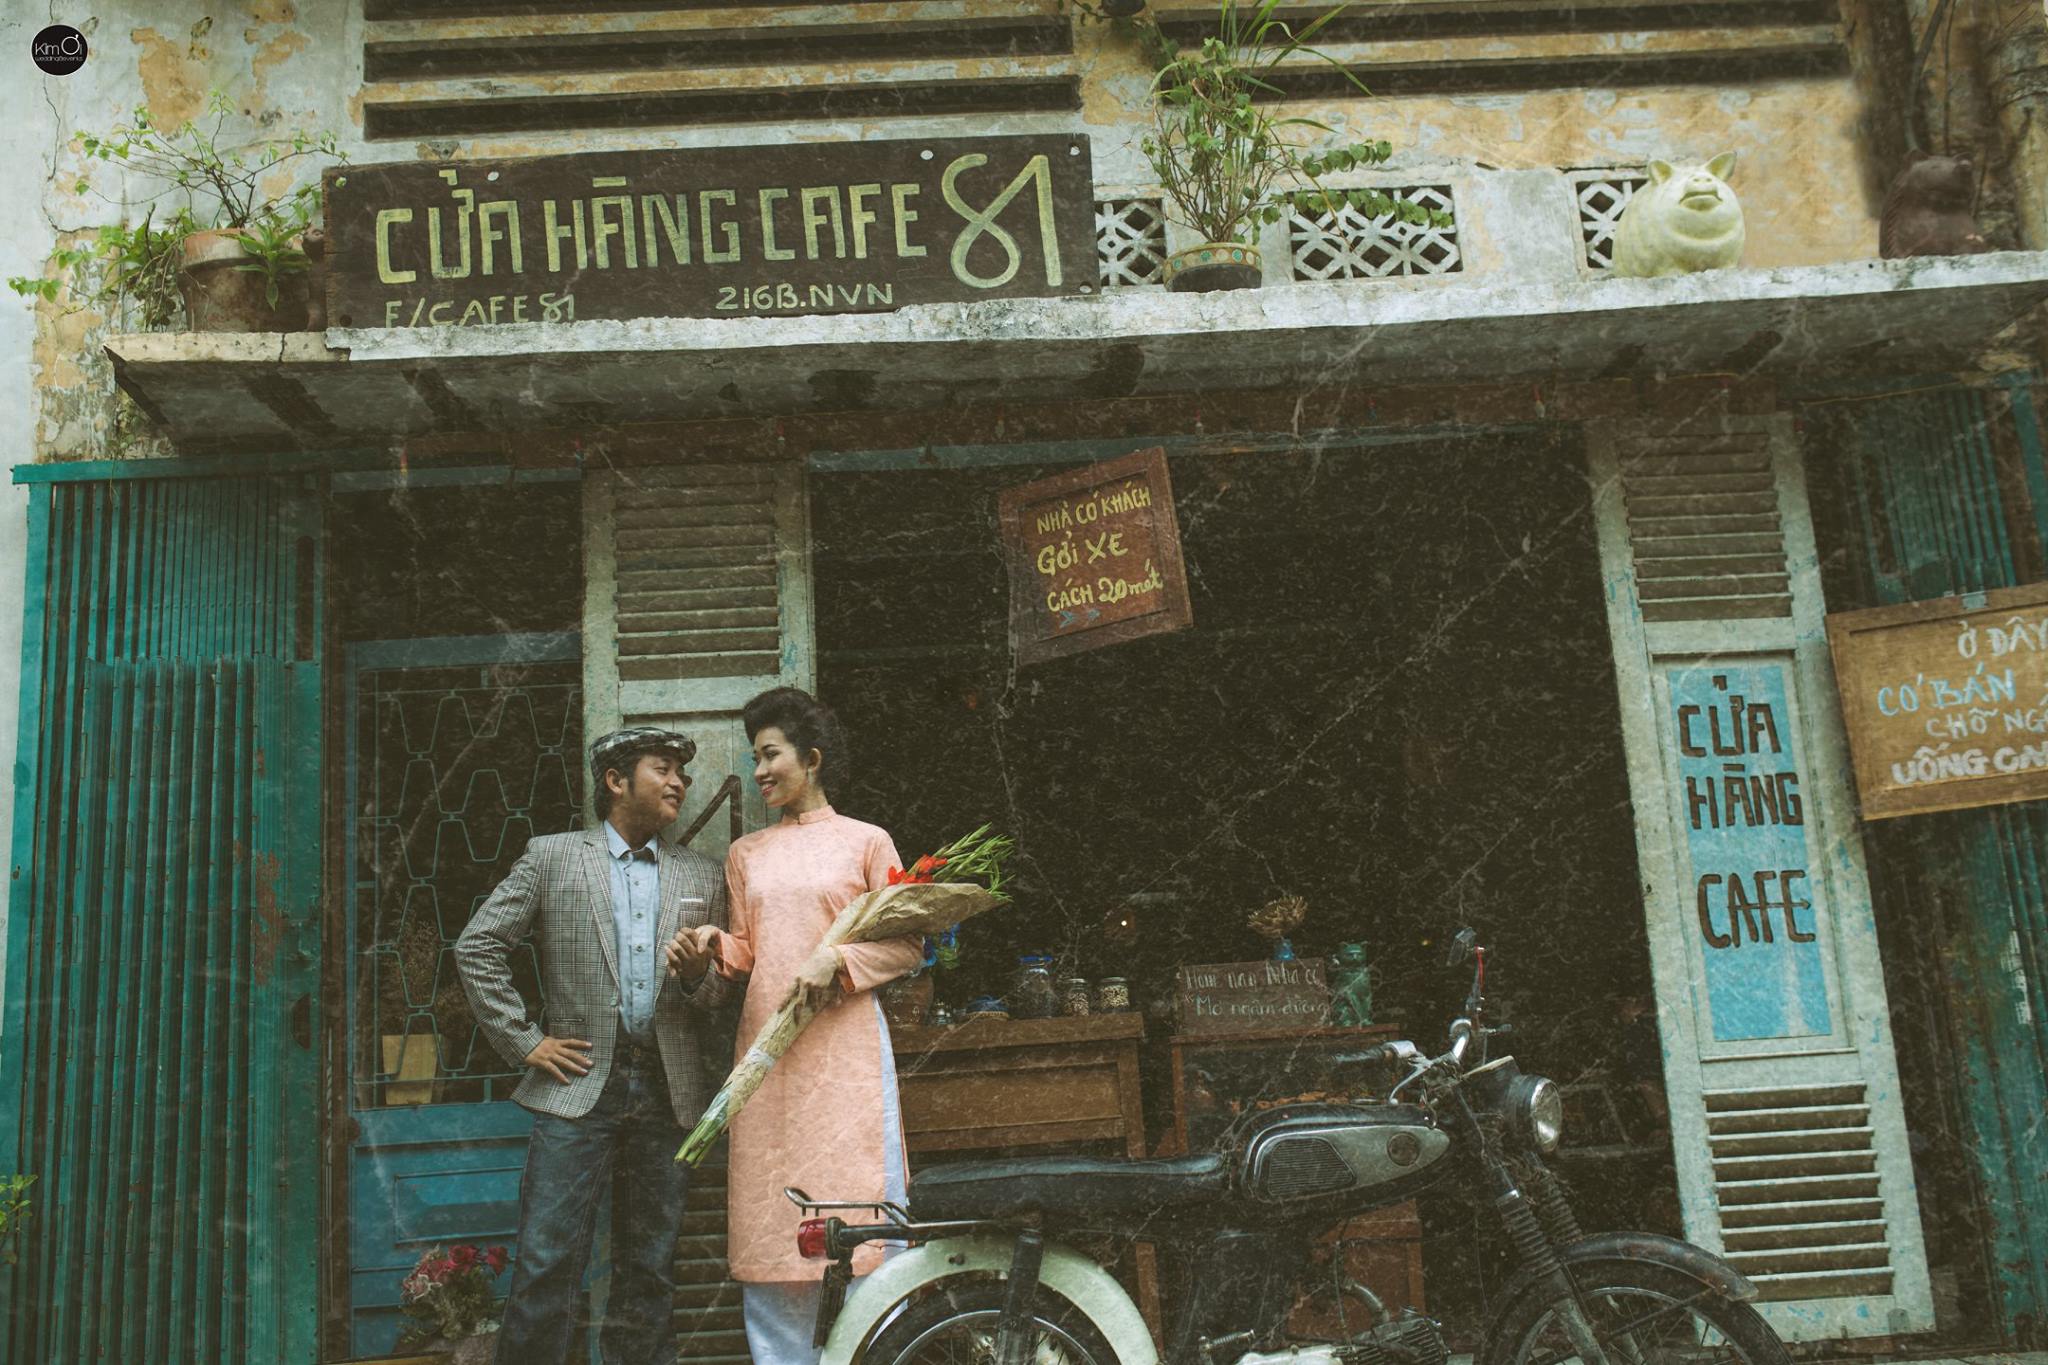 Là một trong những thành phố đẹp nhất Việt Nam, Sài Gòn thập niên 80 càng khiến cho bộ ảnh cưới của bạn trở nên đặc biệt hơn. Bộ ảnh cứng chụp tại những địa điểm nổi tiếng, mang đến không gian lãng mạn, độc đáo. Sản phẩm cuối cùng này sẽ khiến bạn và đối tác của bạn không thể cưỡng lại được sự hạnh phúc tràn đầy.